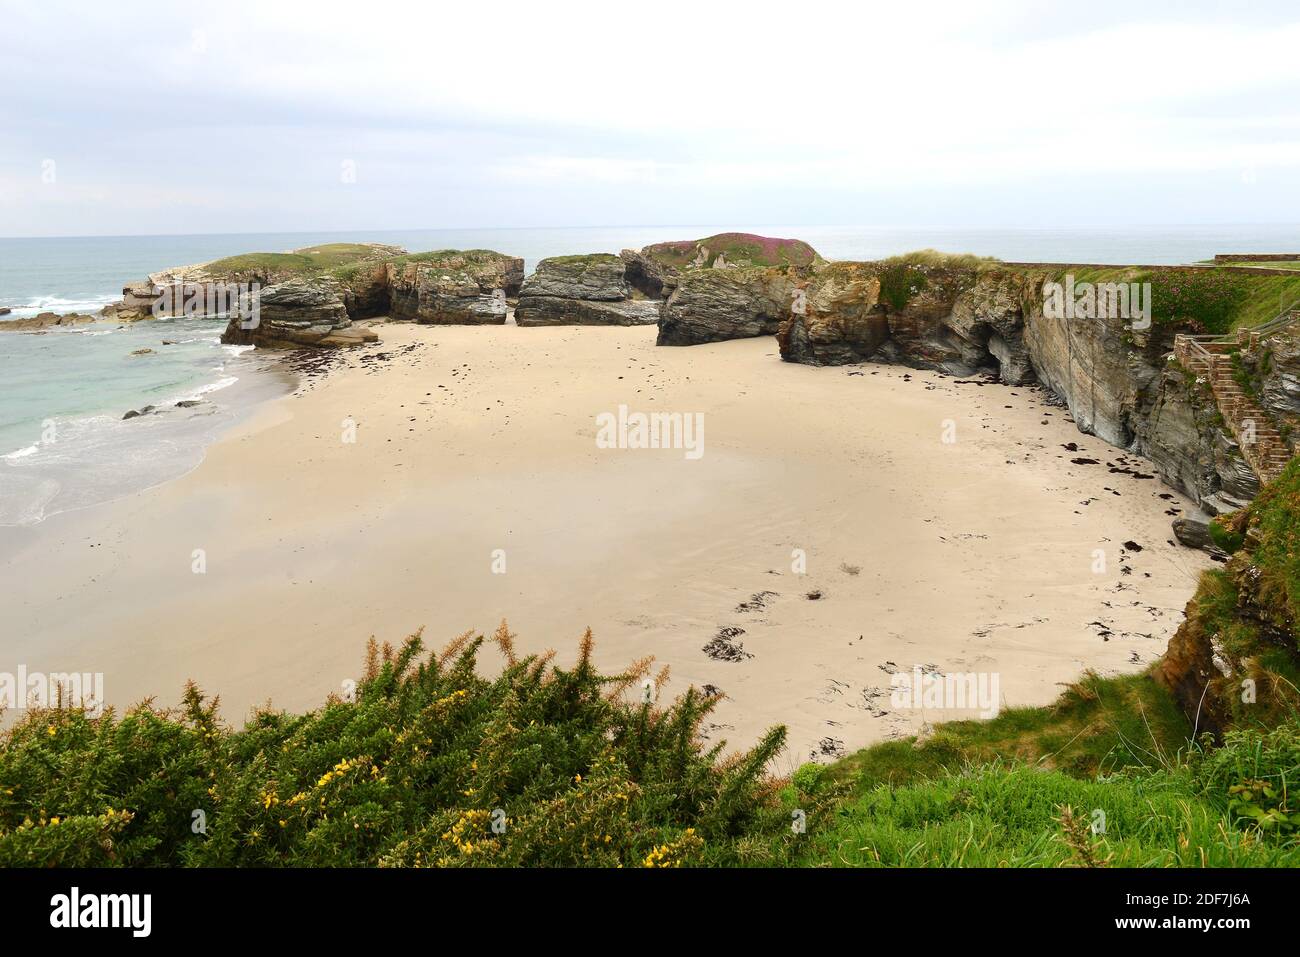 Praia das Illas (playa de las islas), marea baja. Ribadeo, provincia de Lugo, Galicia, España. Foto de stock